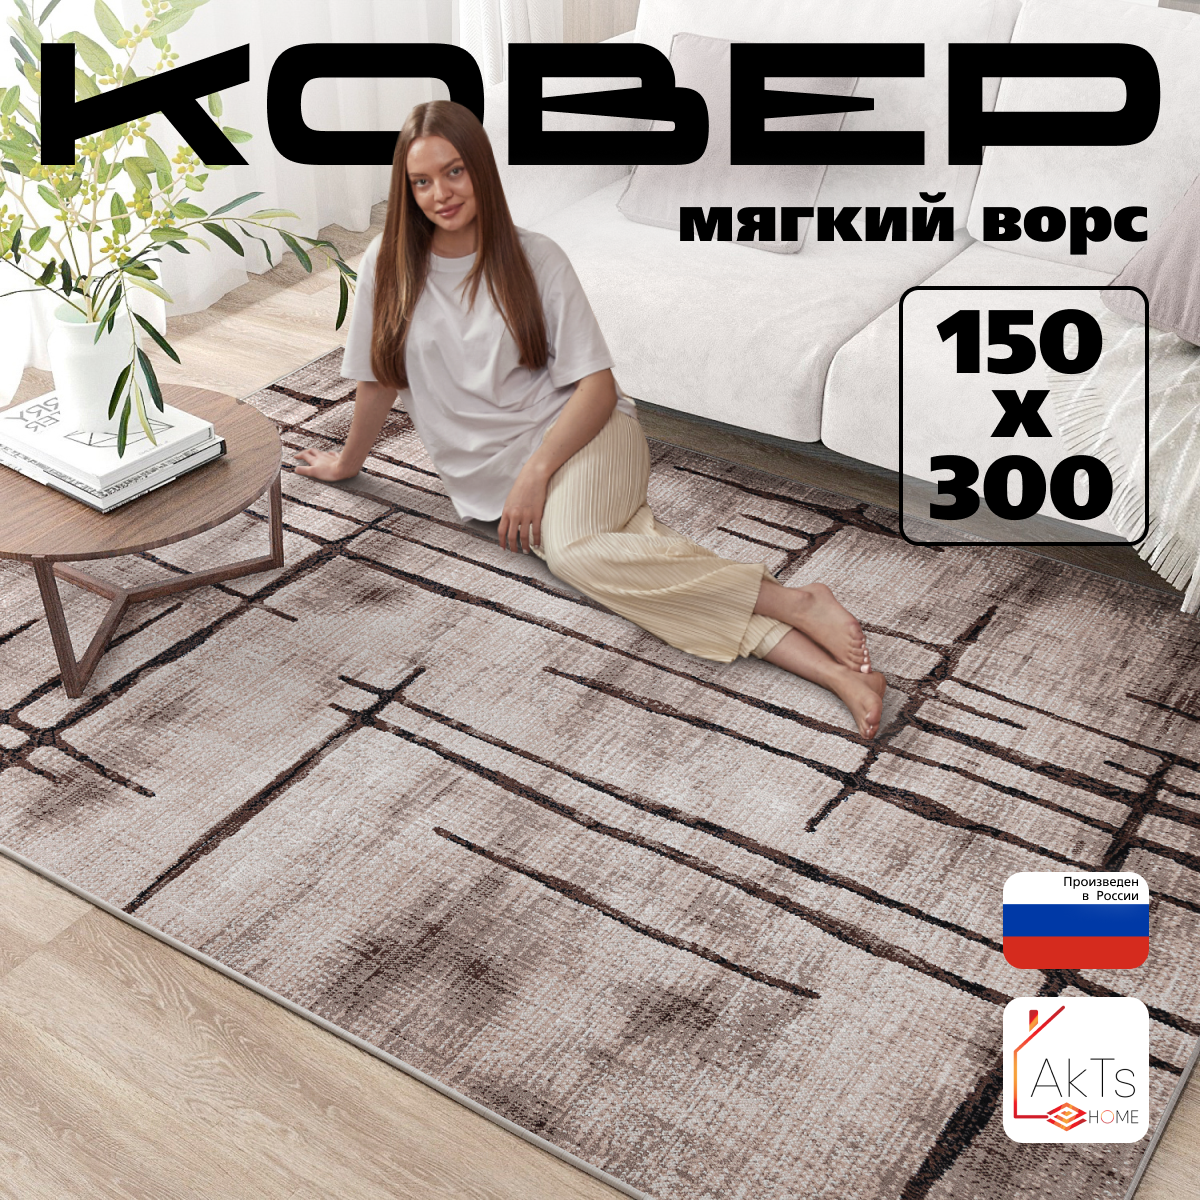 Российский прямоугольный ковер на пол 150 на 300 см в гостиную, зал, спальню, кухню, детскую, прихожую, кабинет, комнату